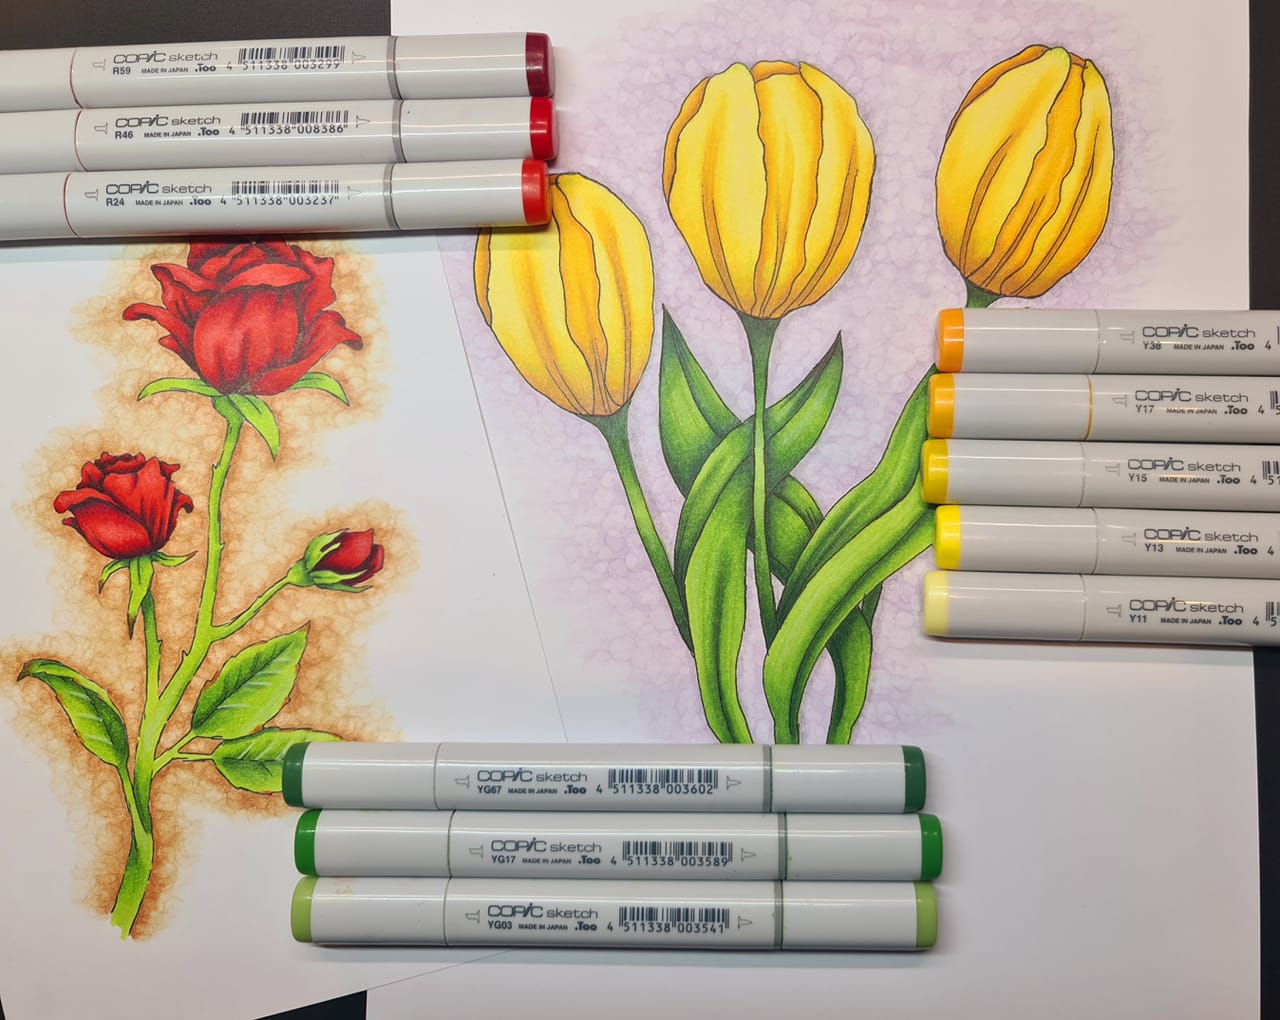 Online Live workshop Cordine van der Touw Bloemen kleuren met Copics 14-03-2021